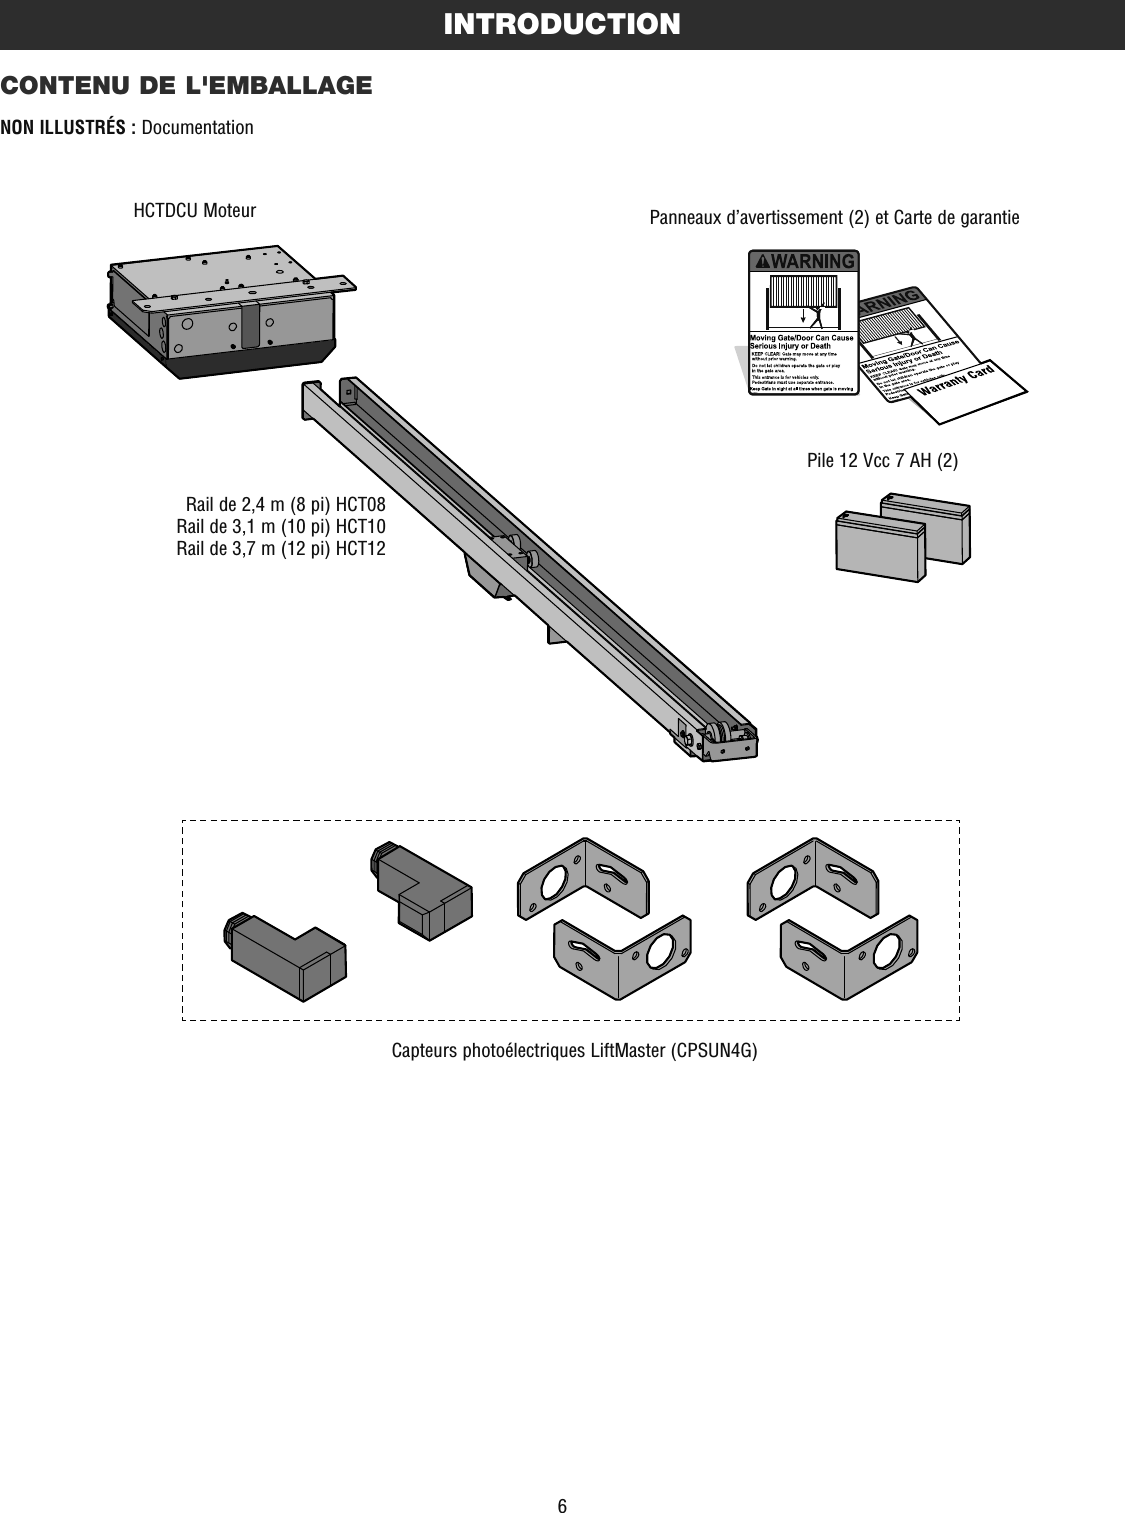 6INTRODUCTIONCONTENU DE L&apos;EMBALLAGENON ILLUSTRÉS : DocumentationHCTDCU MoteurRail de 2,4 m (8 pi) HCT08Rail de 3,1 m (10 pi) HCT10Rail de 3,7 m (12 pi) HCT12Pile 12 Vcc 7 AH (2)Panneaux d’avertissement (2) et Carte de garantieCapteurs photoélectriques LiftMaster (CPSUN4G)